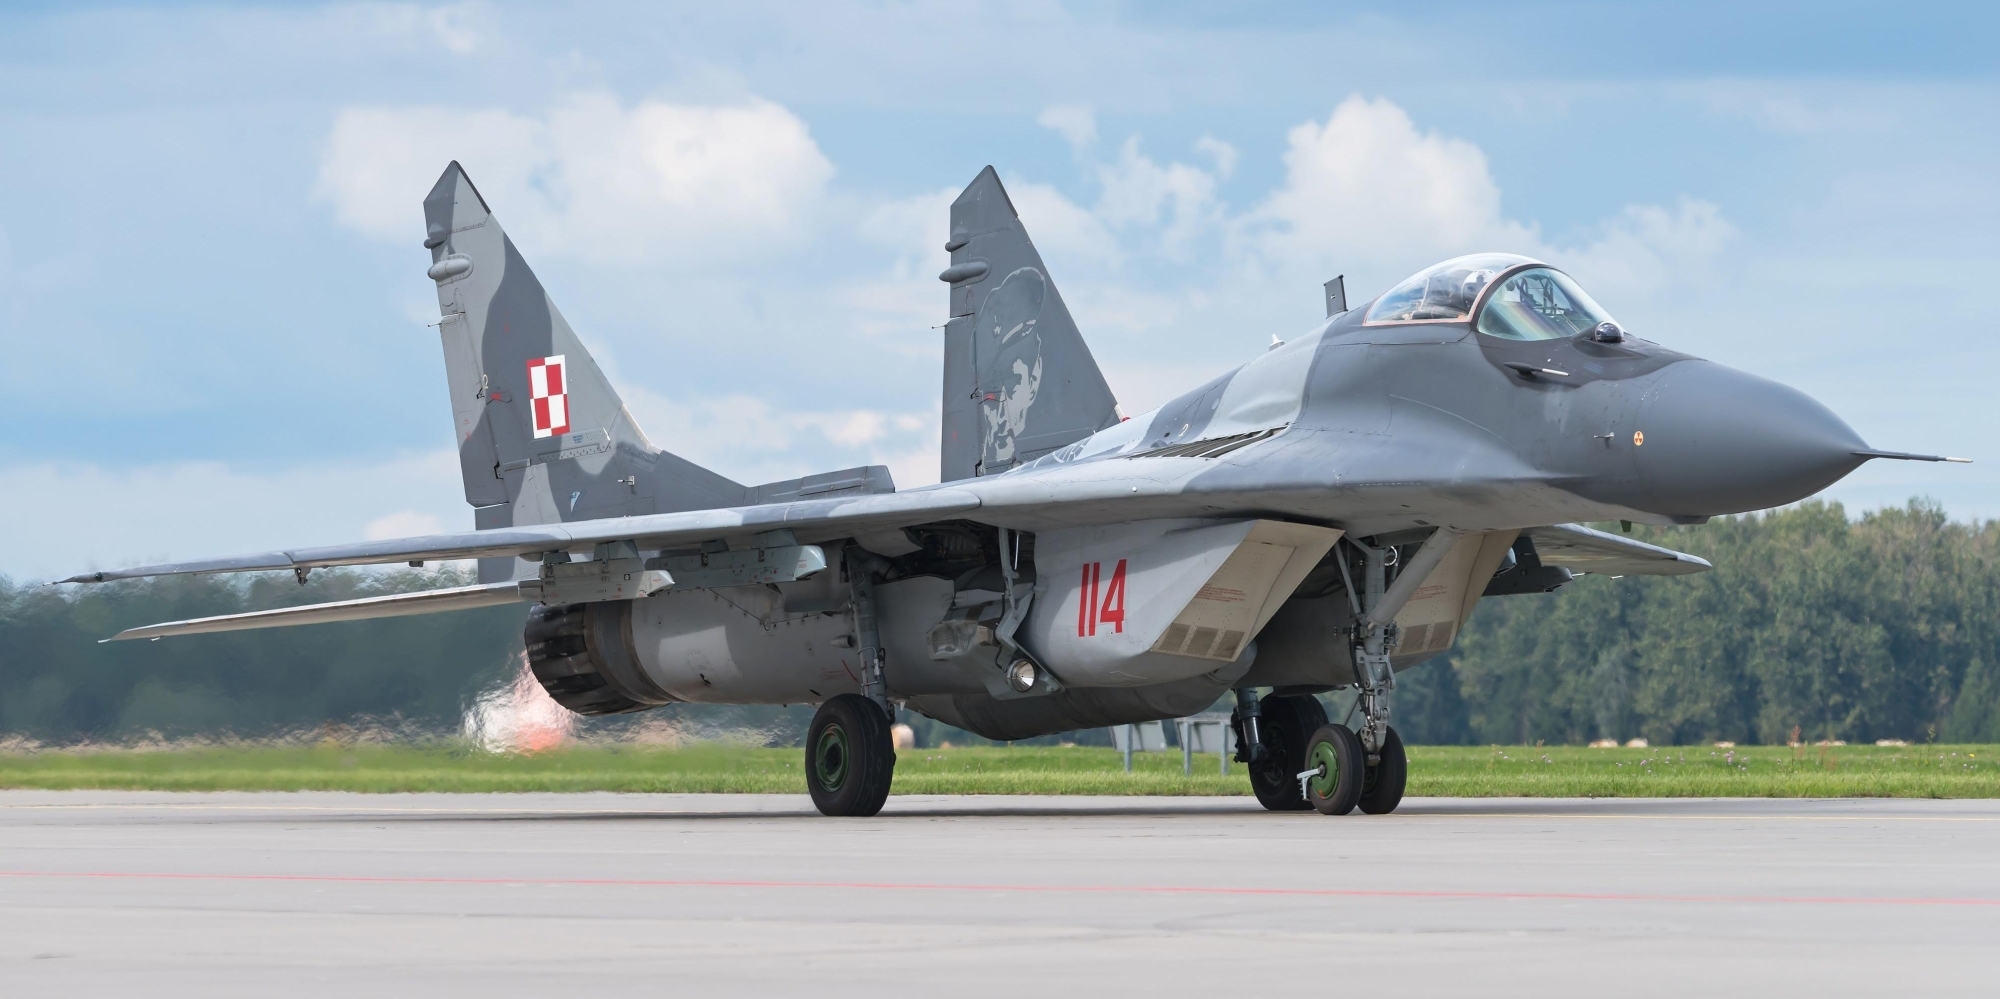 Міністерство закордонних справ: Польща готова передислокувати всі свої літаки МІГ-29